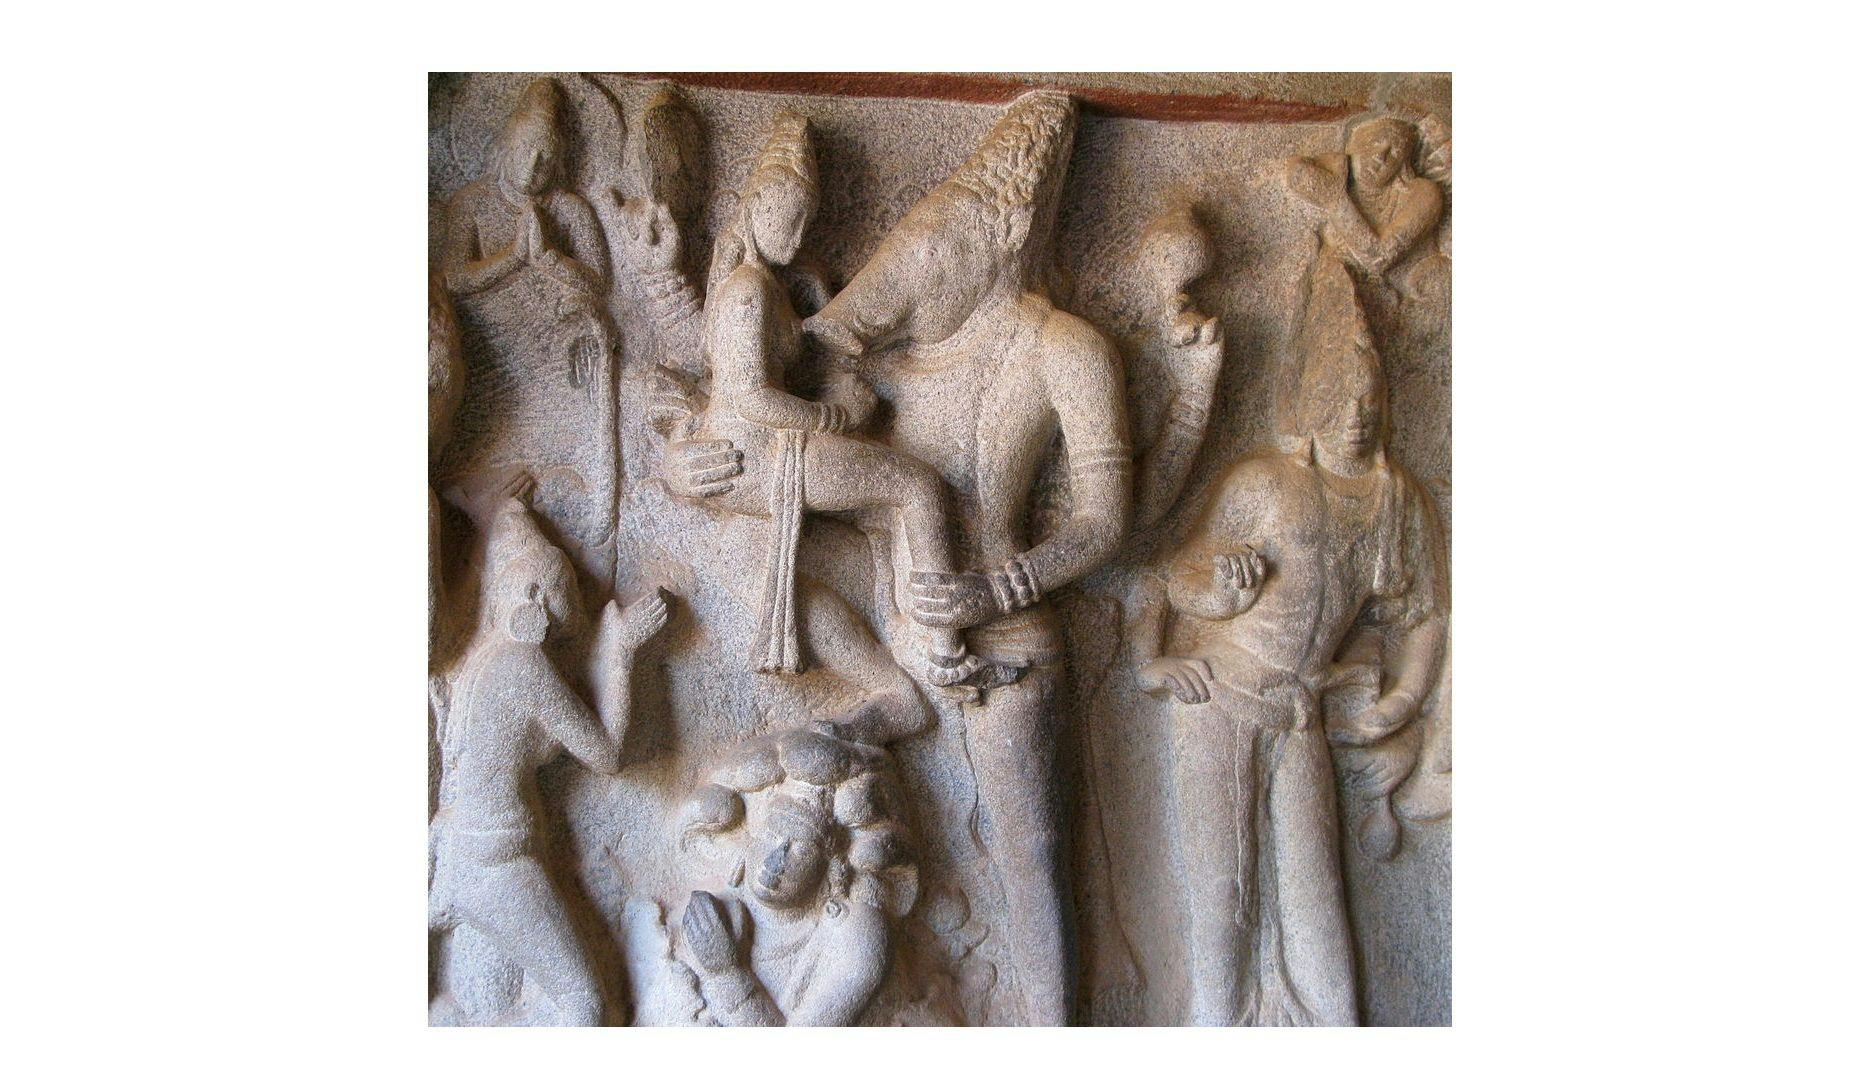 Sculpture of Varaha lifting Bhudevi at Mahabalipuram